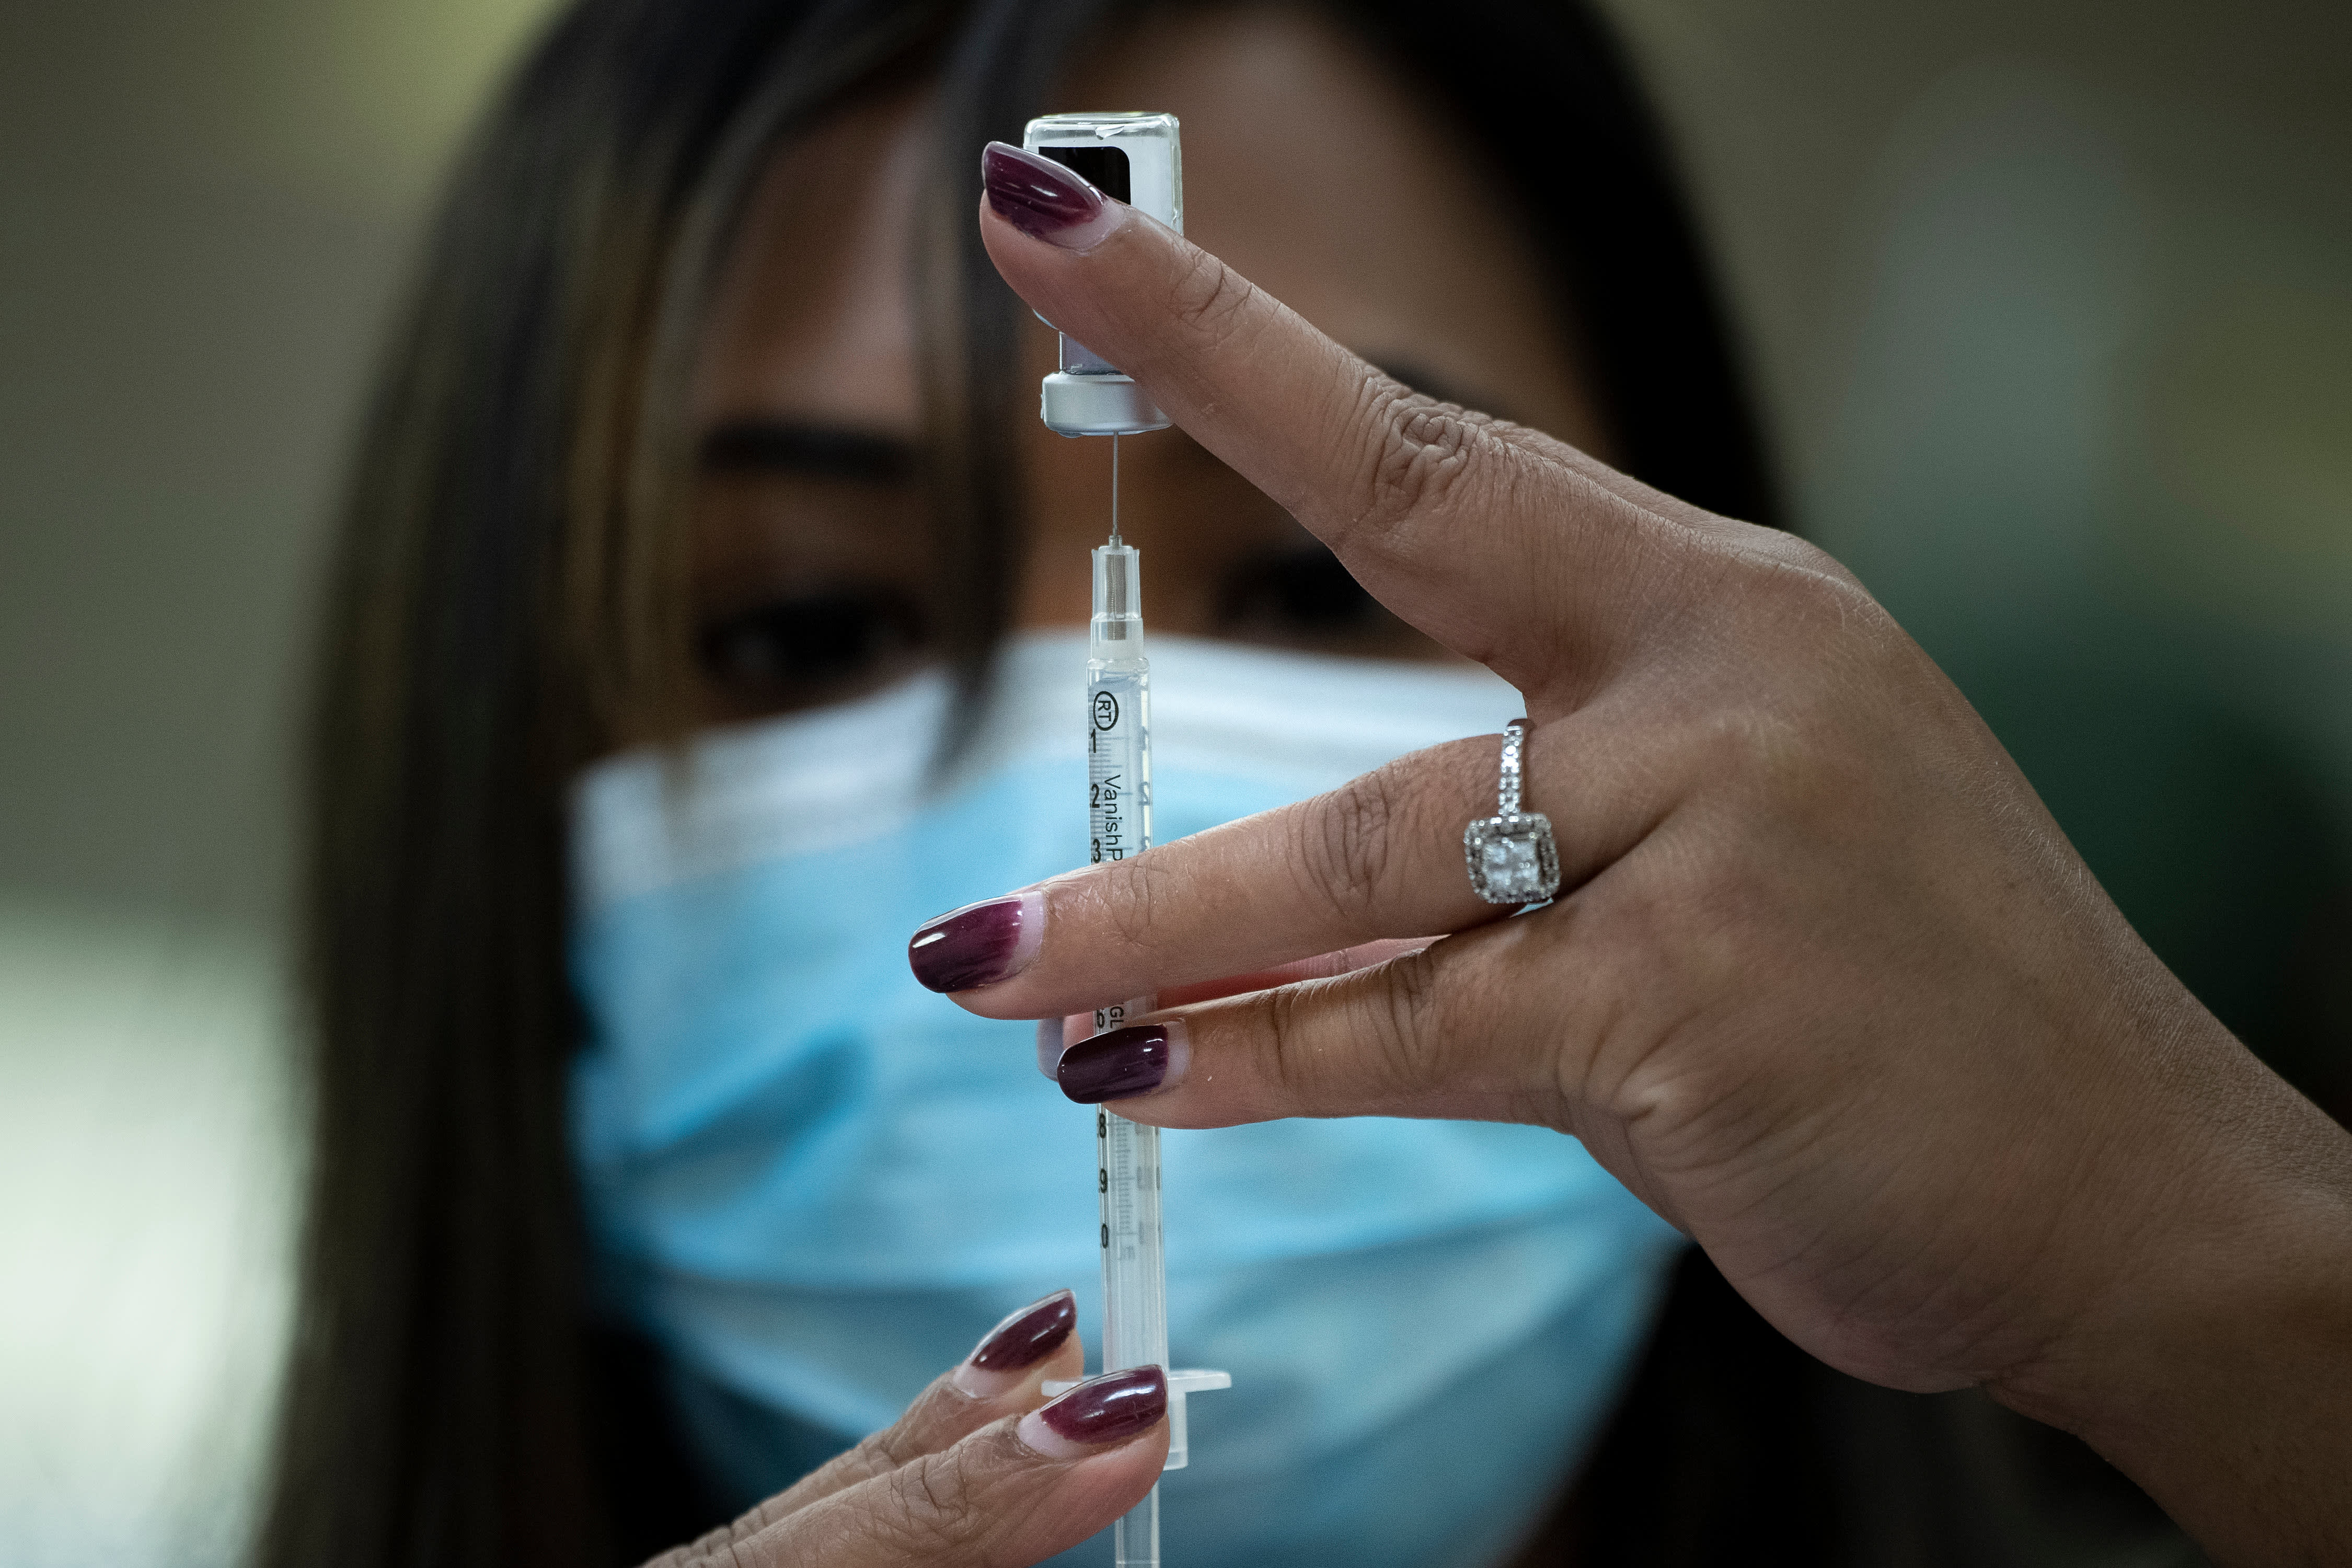 Cdc Severe Allergic Reactions To Covid Vaccine Run 10 Times Flu Shot Still Rare